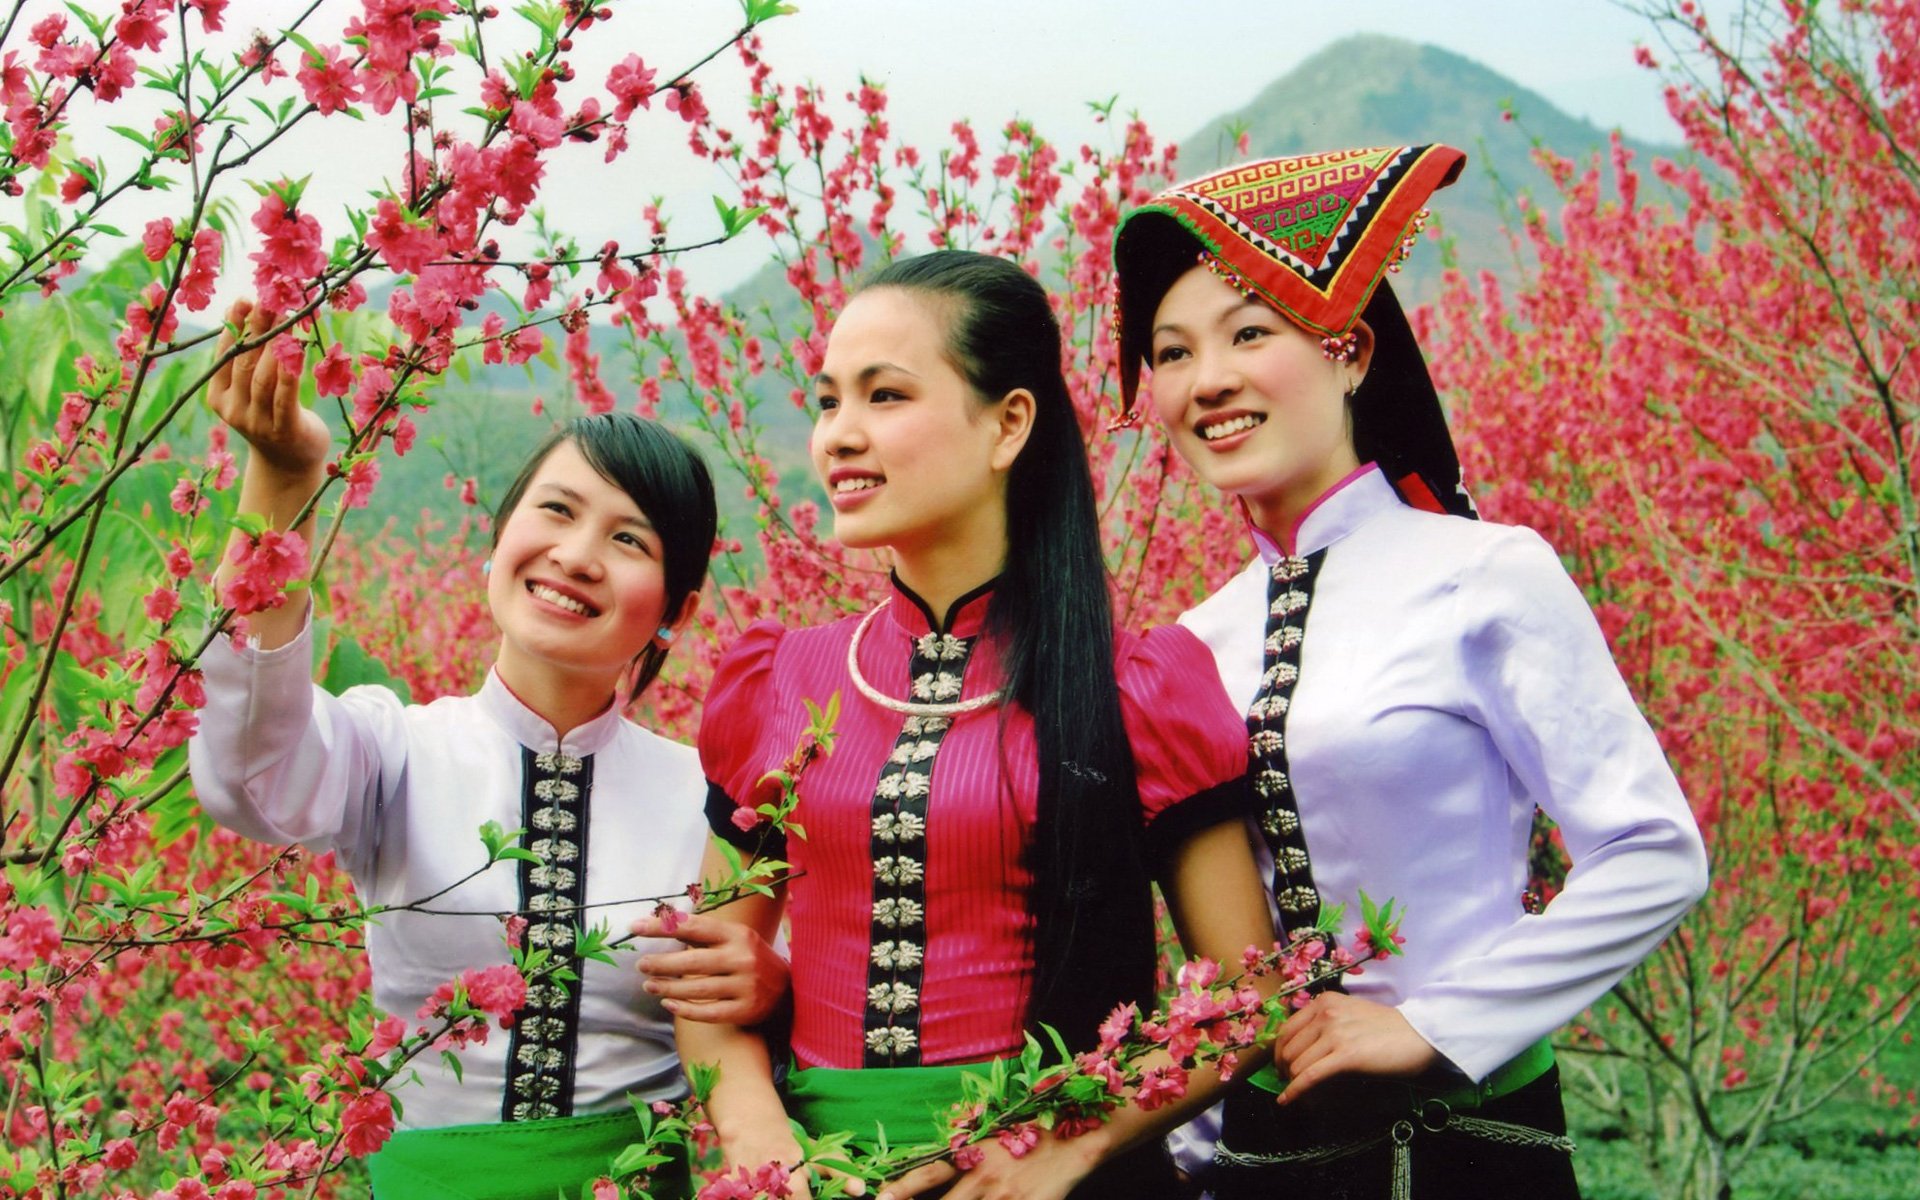 Ethnic groups in Vietnam